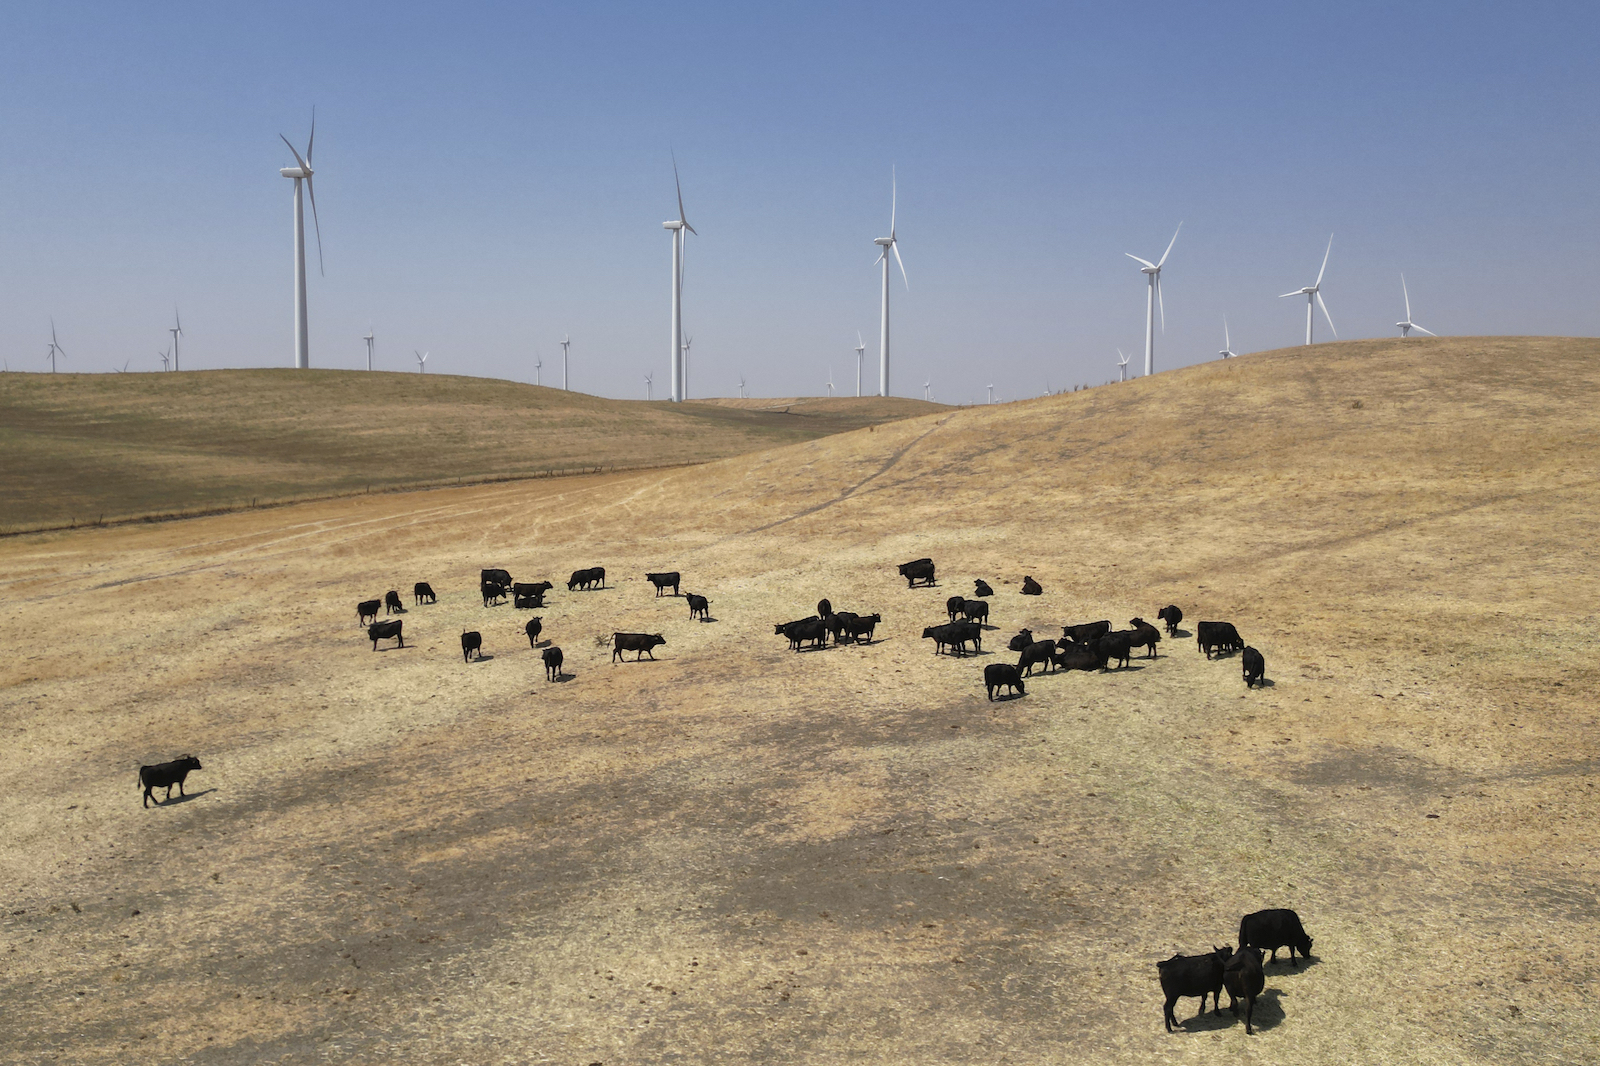 a herd of black cattle graze on dry hills near wind turbines under a blue sky